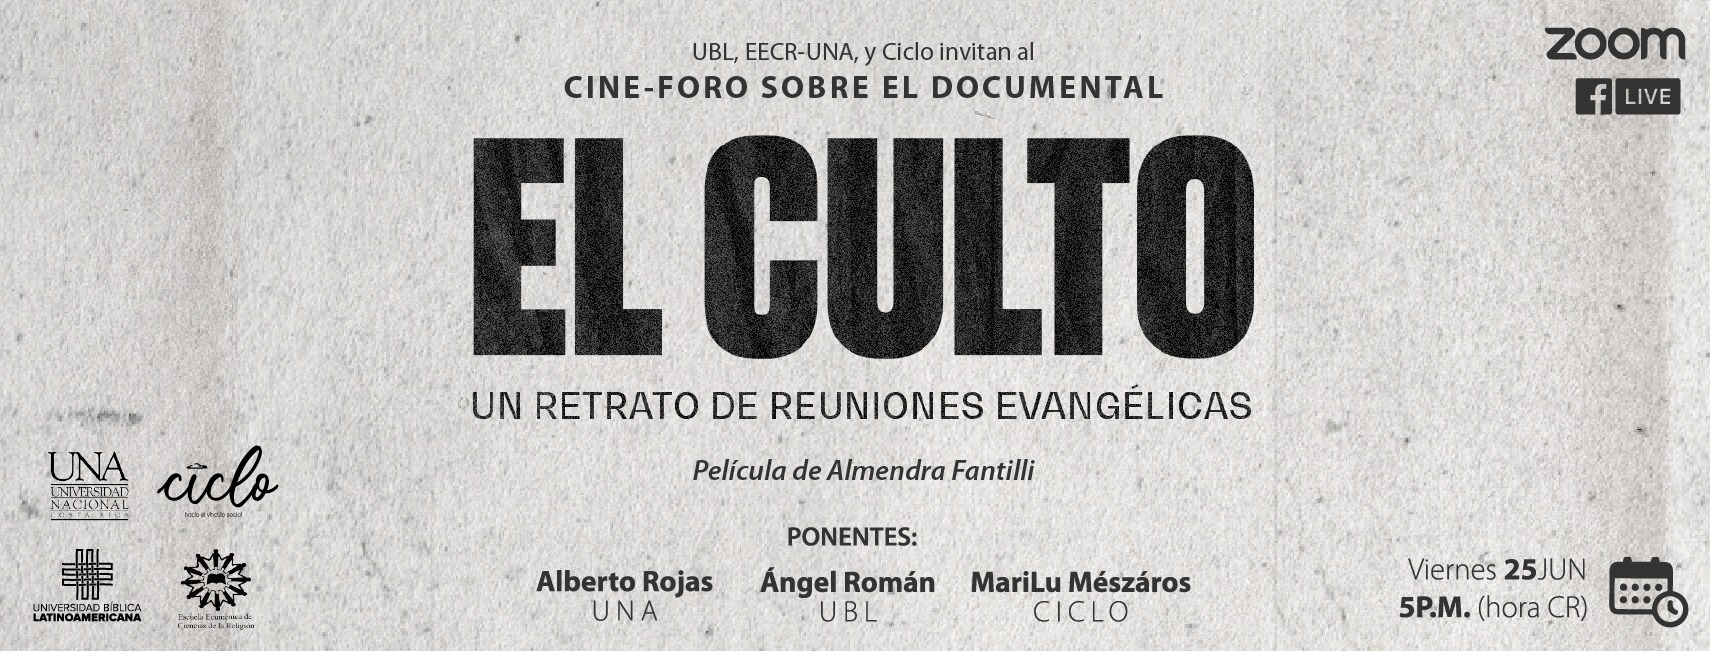 Cine-foro El Culto. Un retrato de reuniones evangélicas